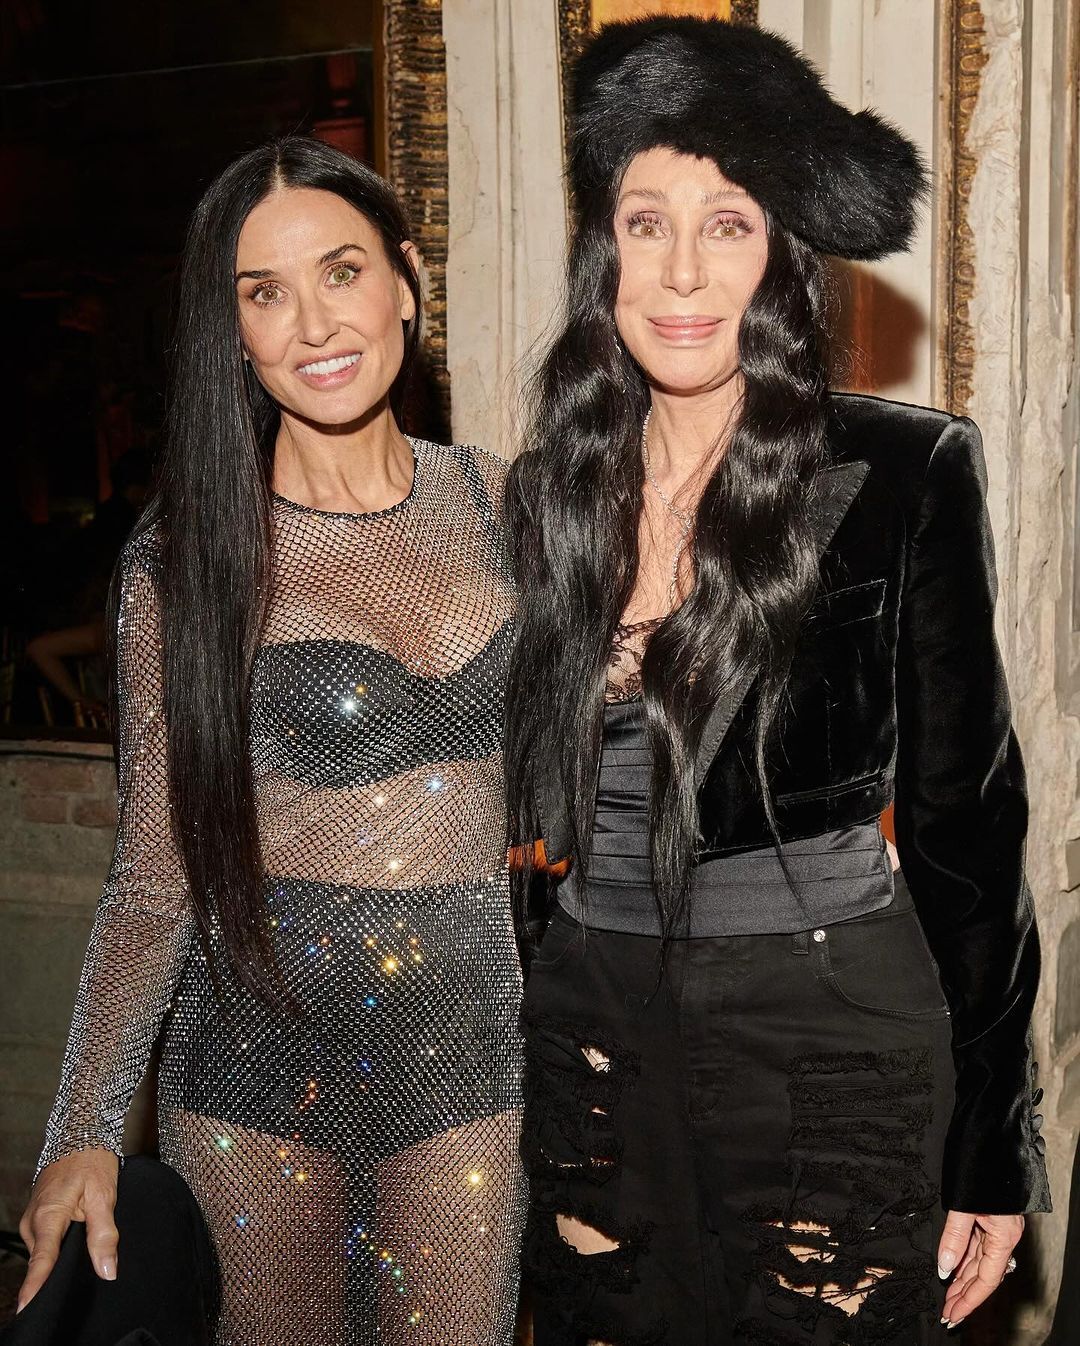 Деми Мур пришла на вечеринку Dolce & Gabbana в прозрачном платье с блестками: фигура 61-летней актрисы поразила всех